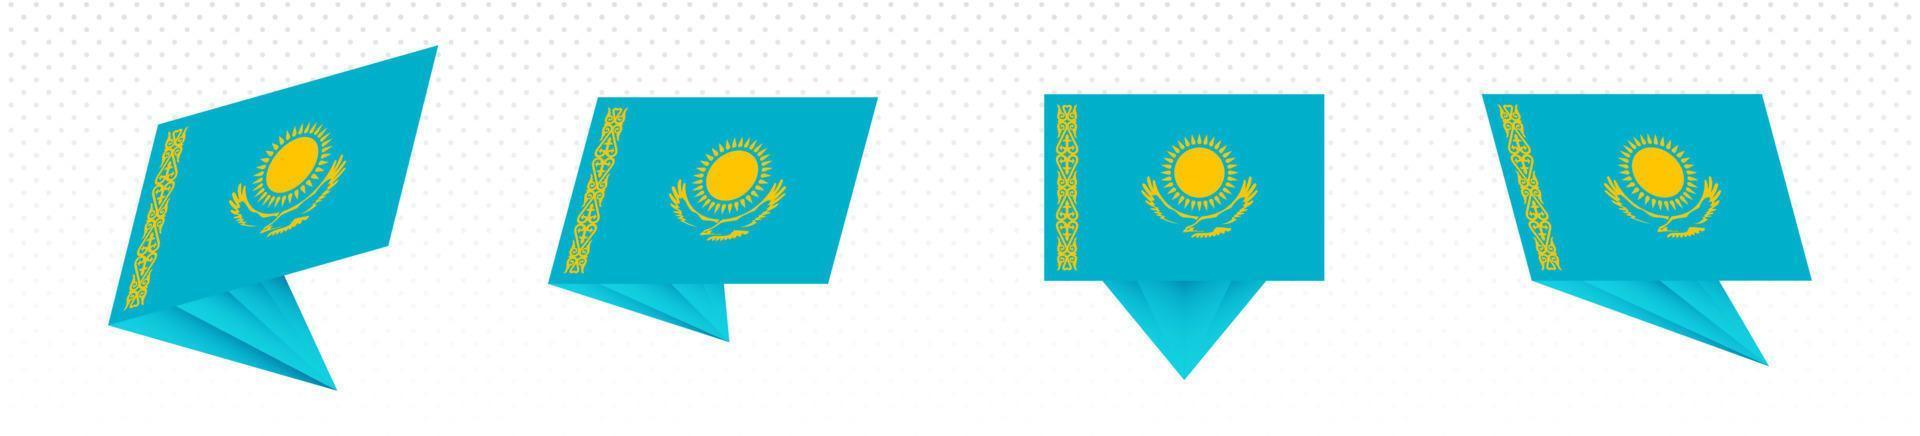 bandeira do cazaquistão em design abstrato moderno, conjunto de bandeiras. vetor